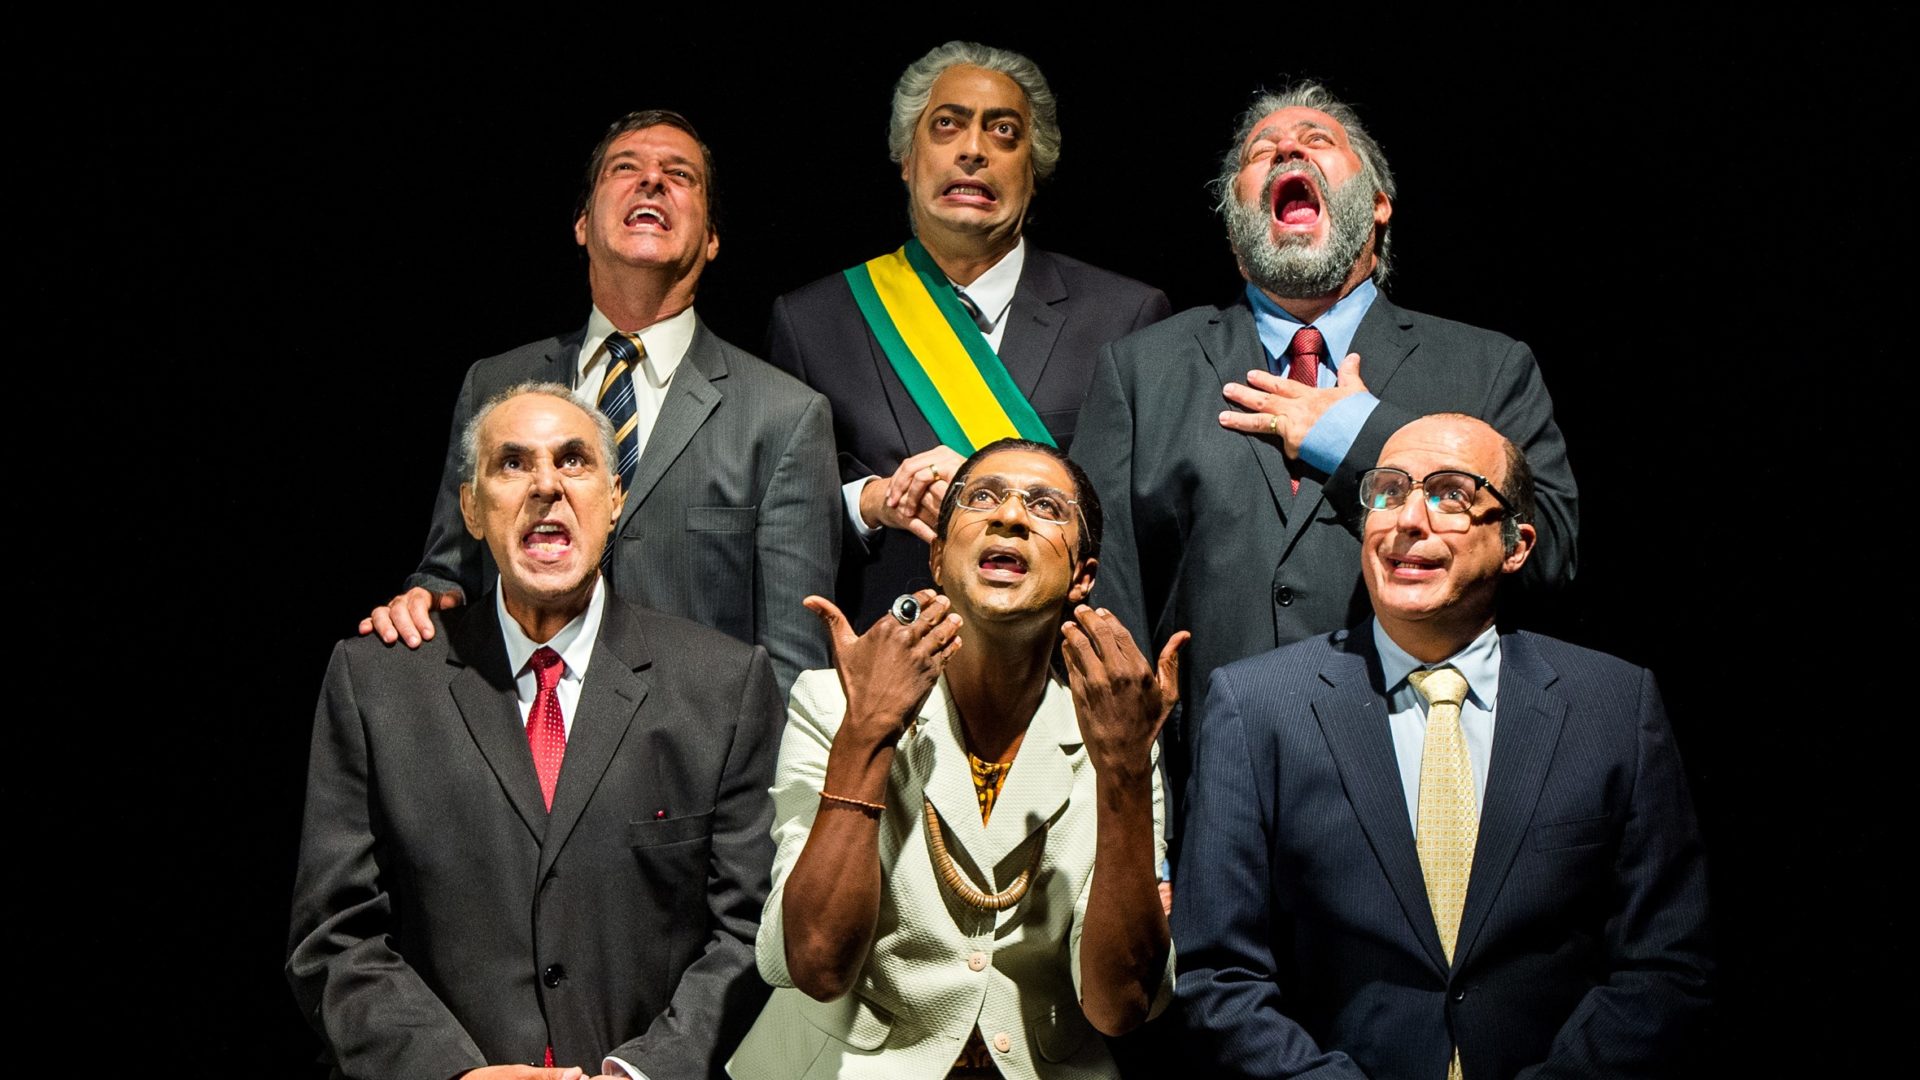 Paródia dos candidatos Bolsonaro ( Antonio Fragoso ), Temer ( Fernando Caruso ), Lula ( Otavio Muller ), Alckmin ( Candido Damm ), Marina ( Luís Miranda ) e Ciro Gomes ( Anselmo Vasconcellos )